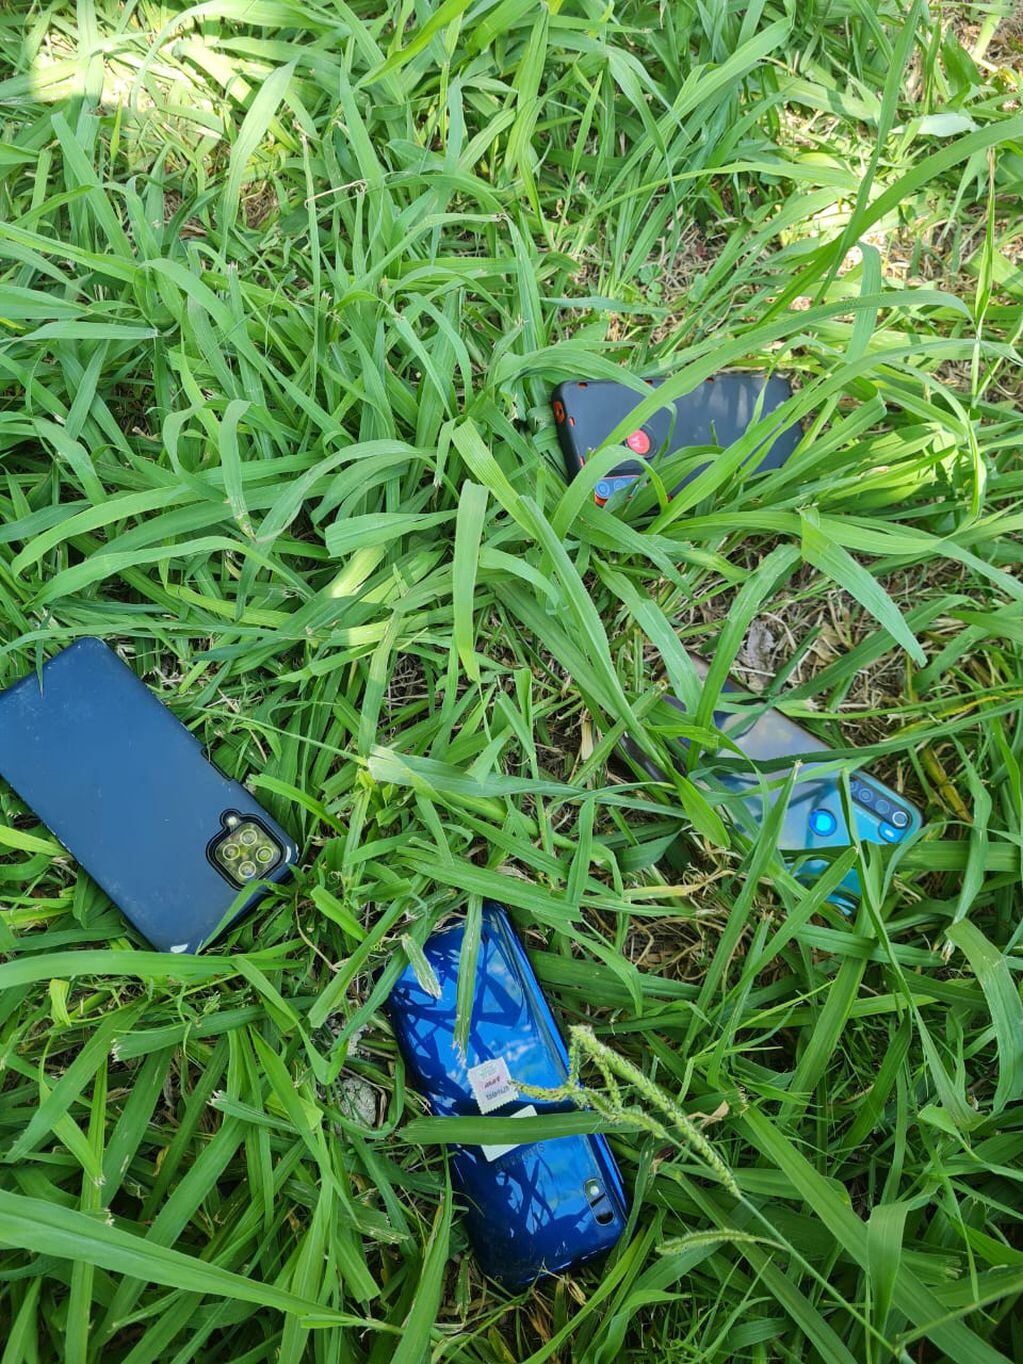 Los celulares robados.